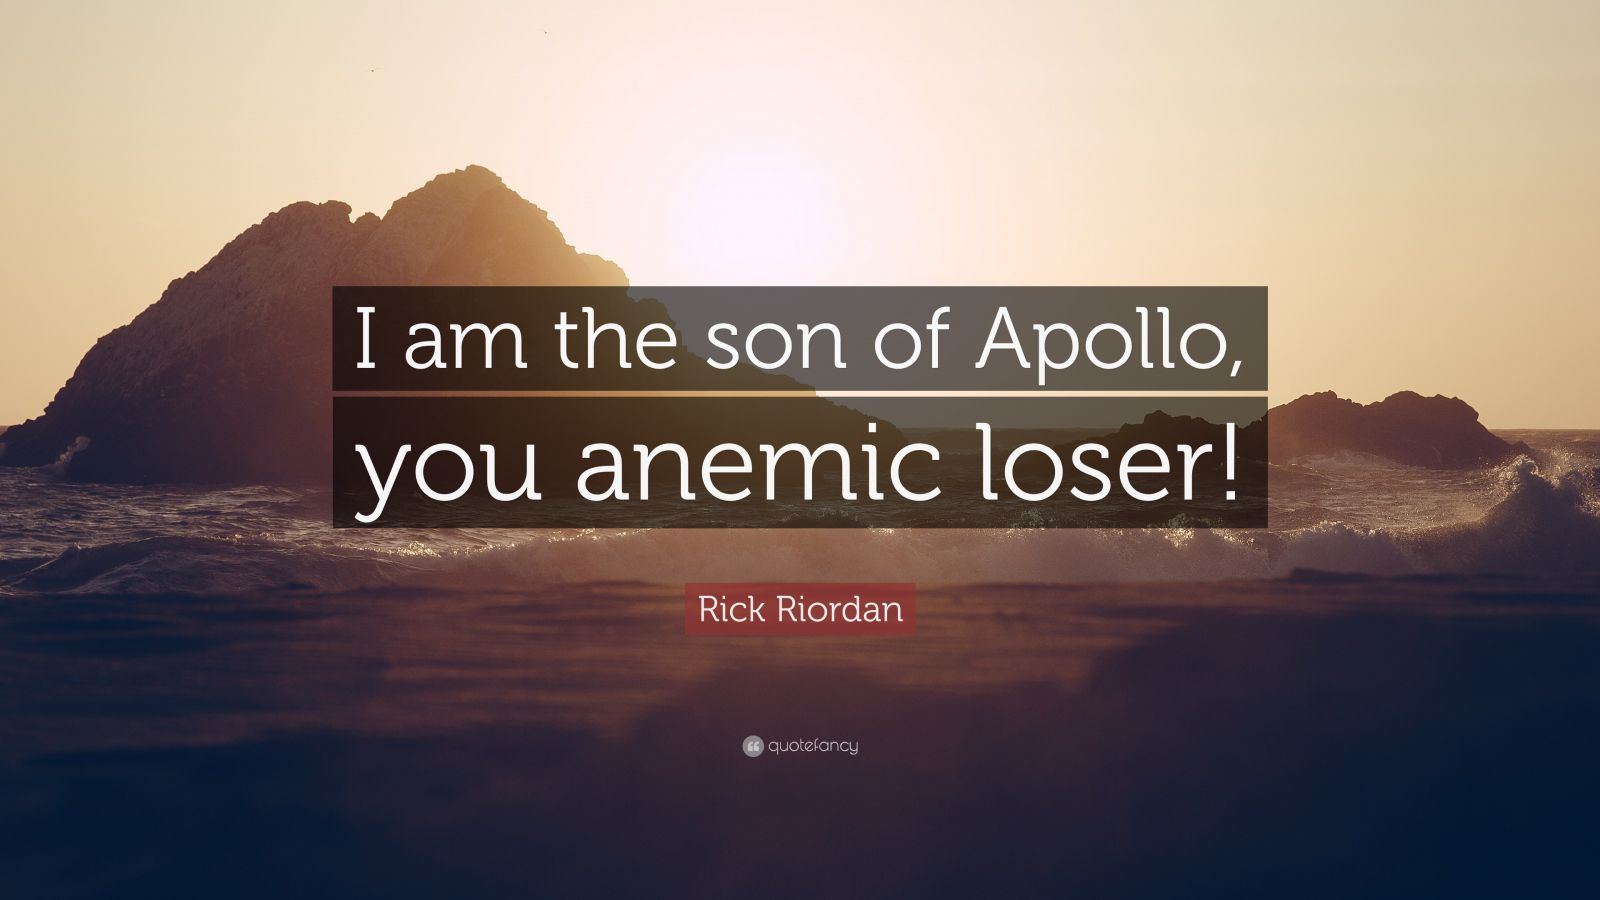 Rick Riordan Quote: “I am the son of Apollo, you anemic loser!”